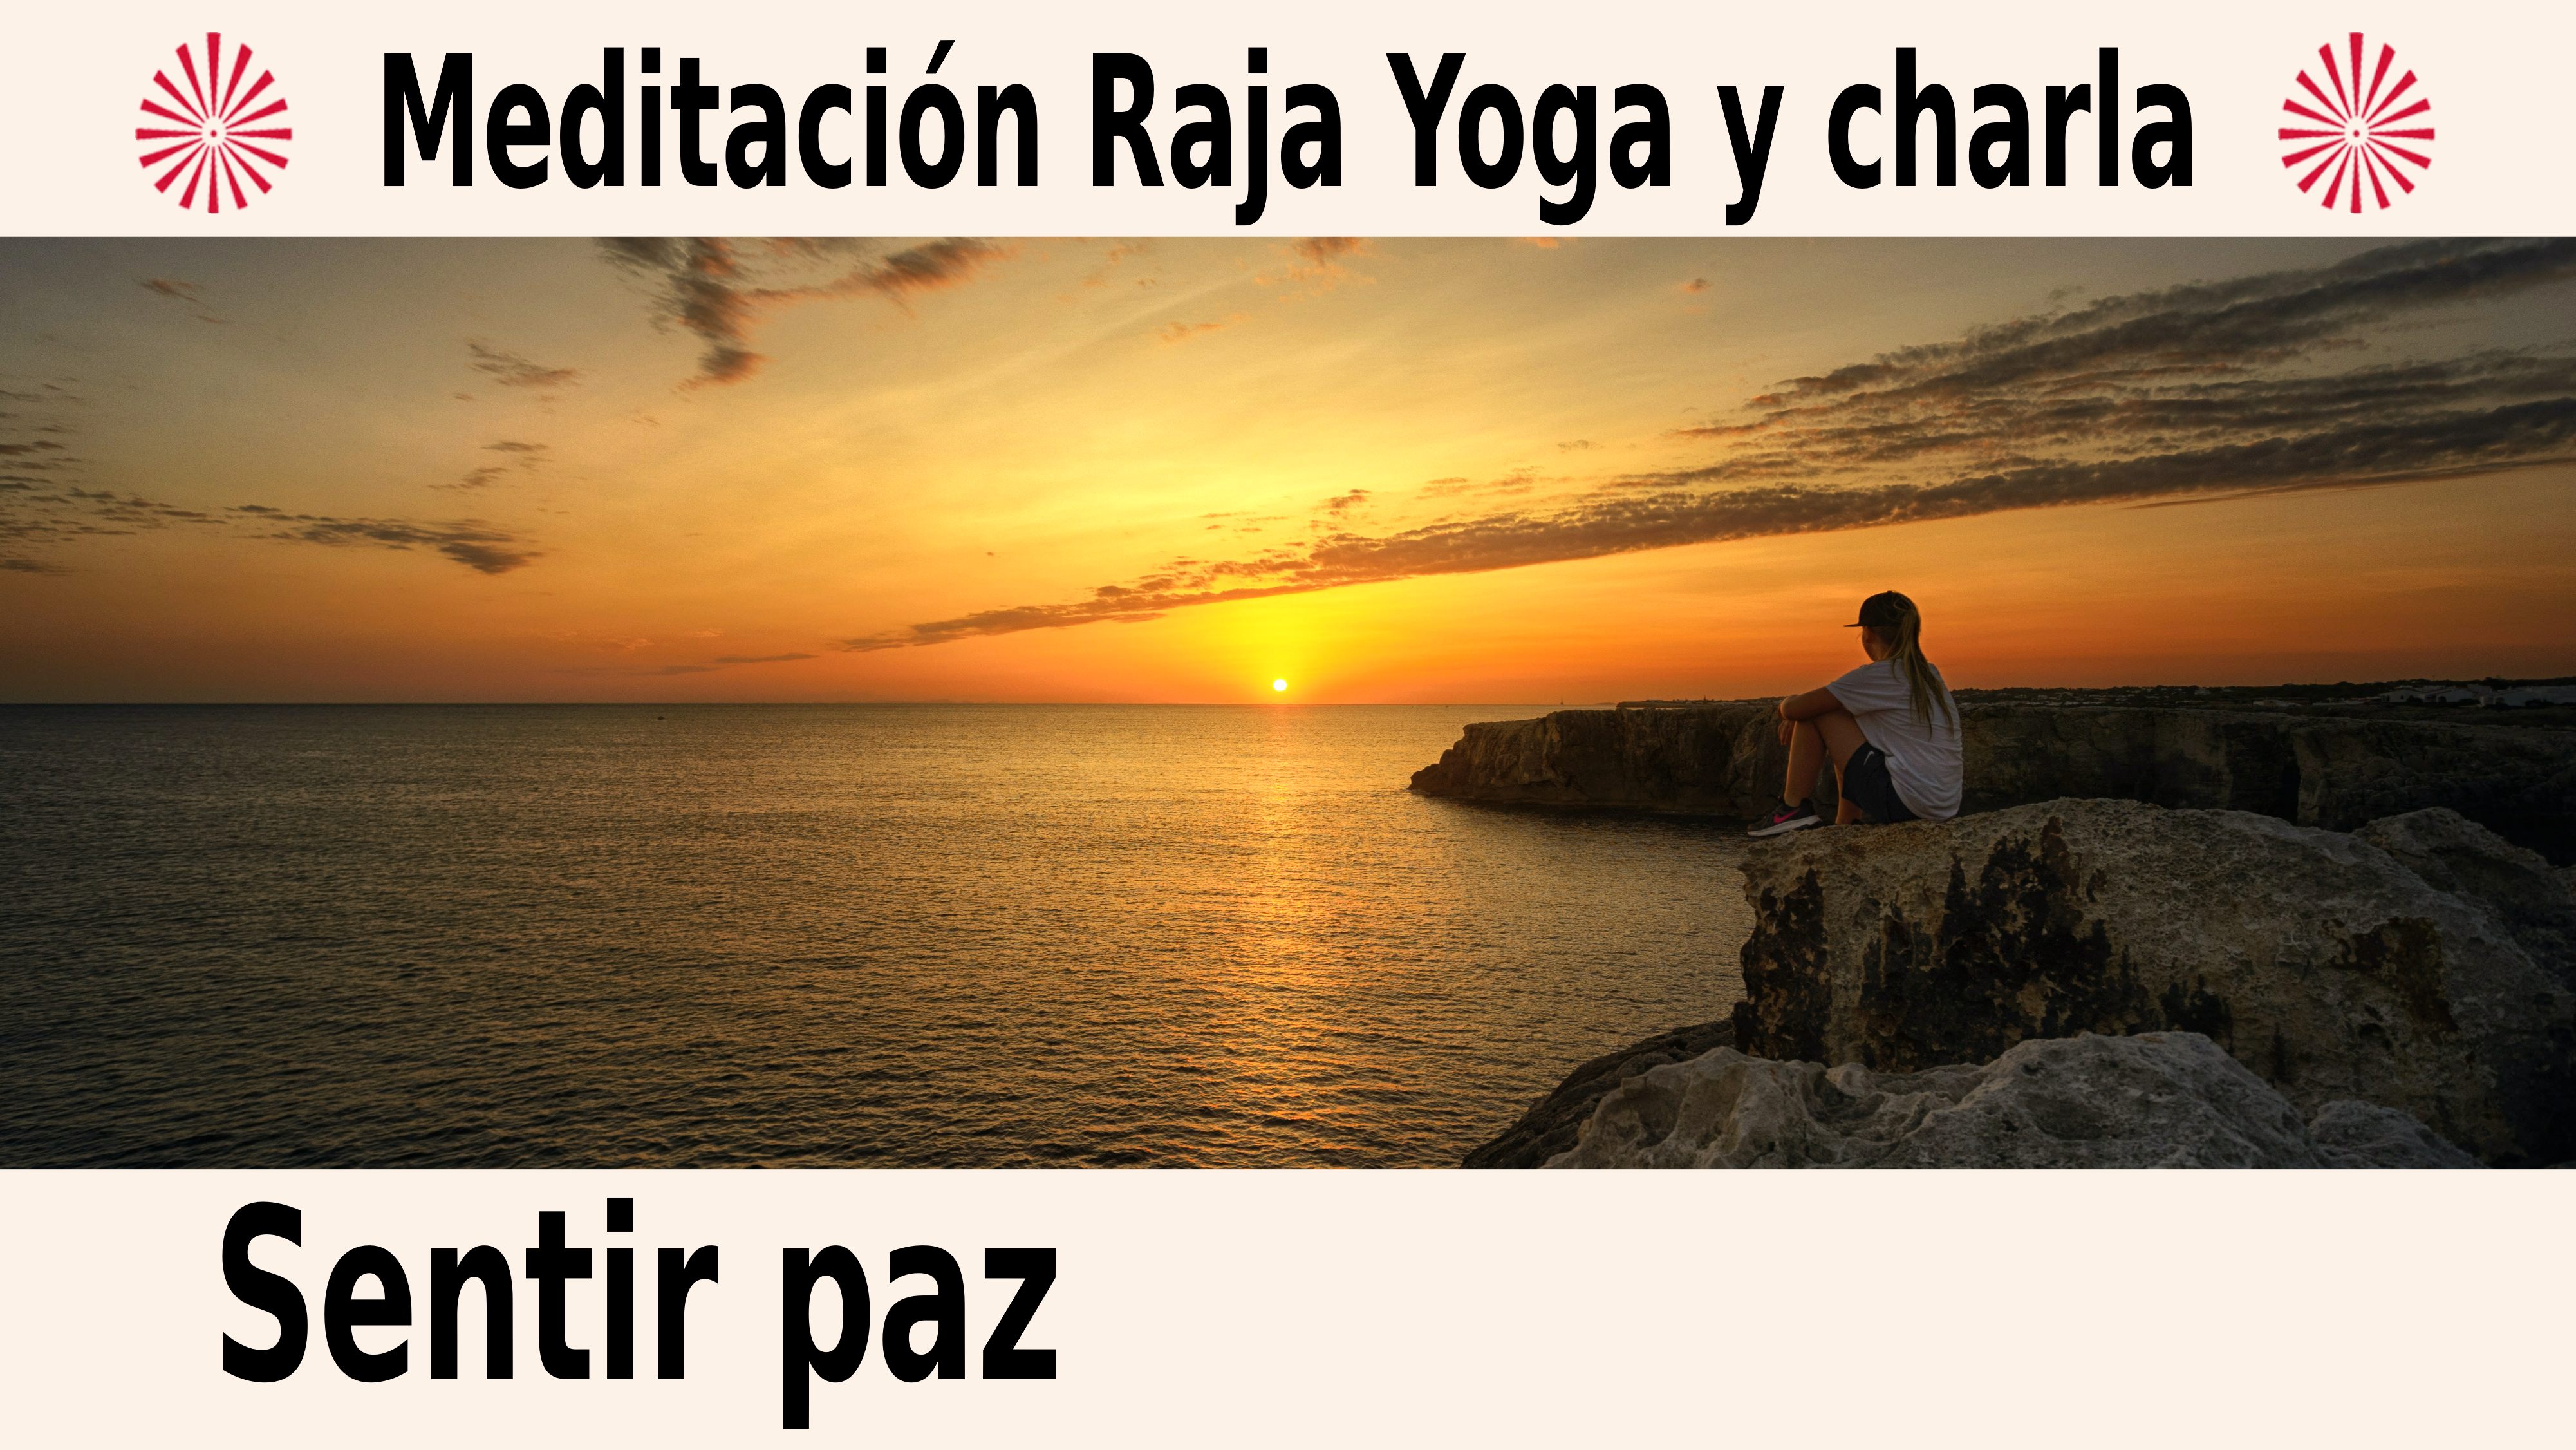 Meditación Raja Yoga y charla:  Sentir paz (1 Diciembre 2020) On-line desde Canarias